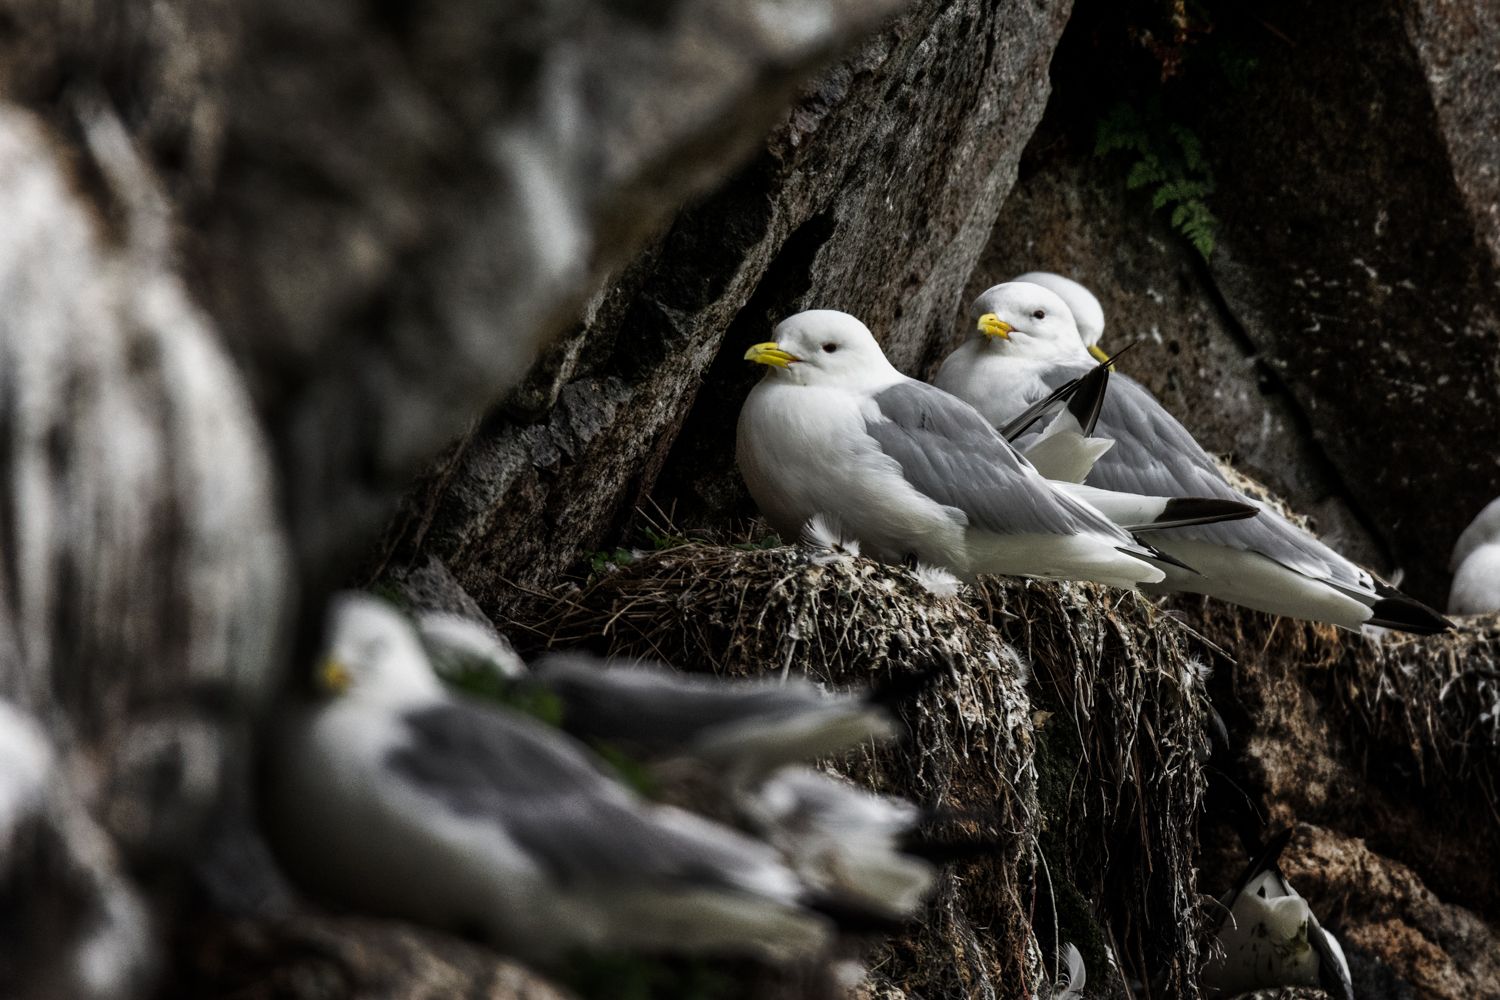 Beispielfotos von der Neusiedlersee Reise mit Birdingtours und Nikon.